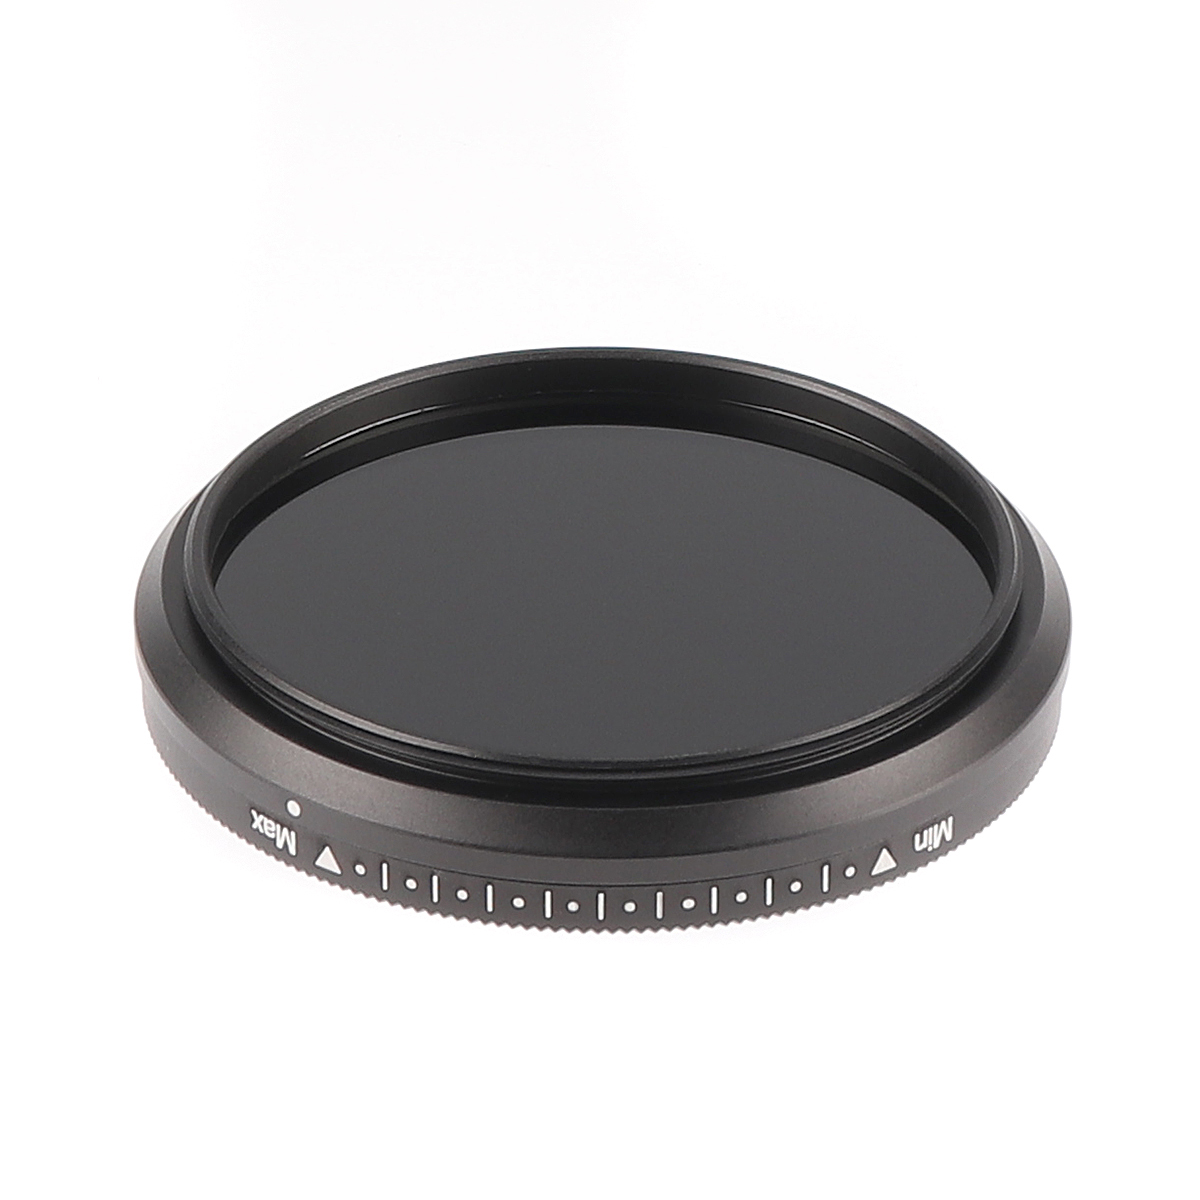 Fotga 46mm ND2 to ND400 Slim Fader Variable Adjustable Camera Lens ND Filter Neutral Density Optial Glass 